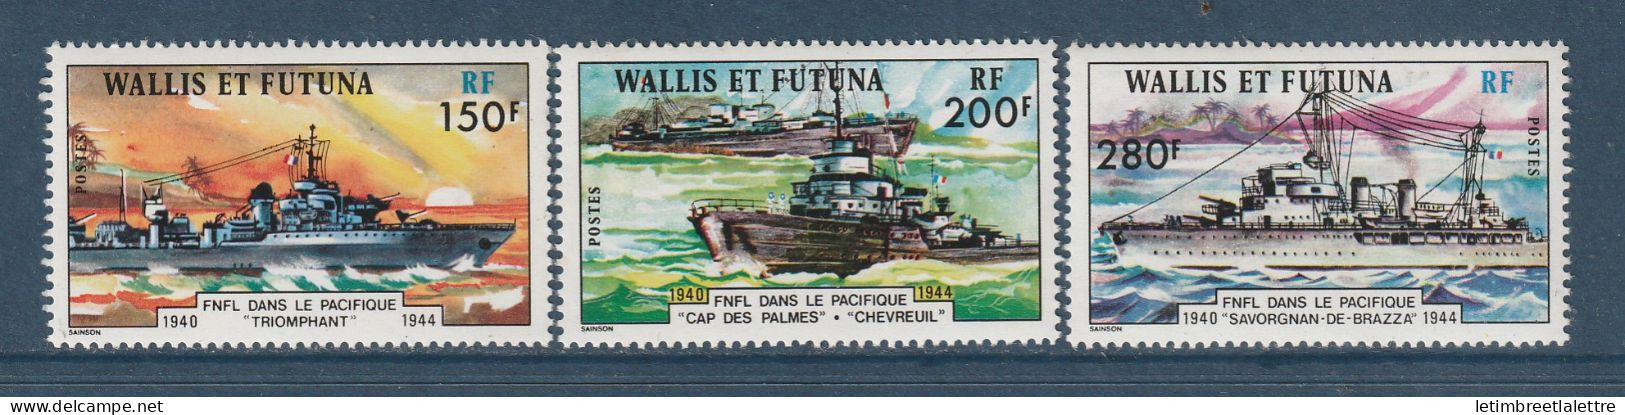 Wallis Et Futuna - YT N° 210 à 212 ** - Neuf Sans Charnière - 1978 - Unused Stamps